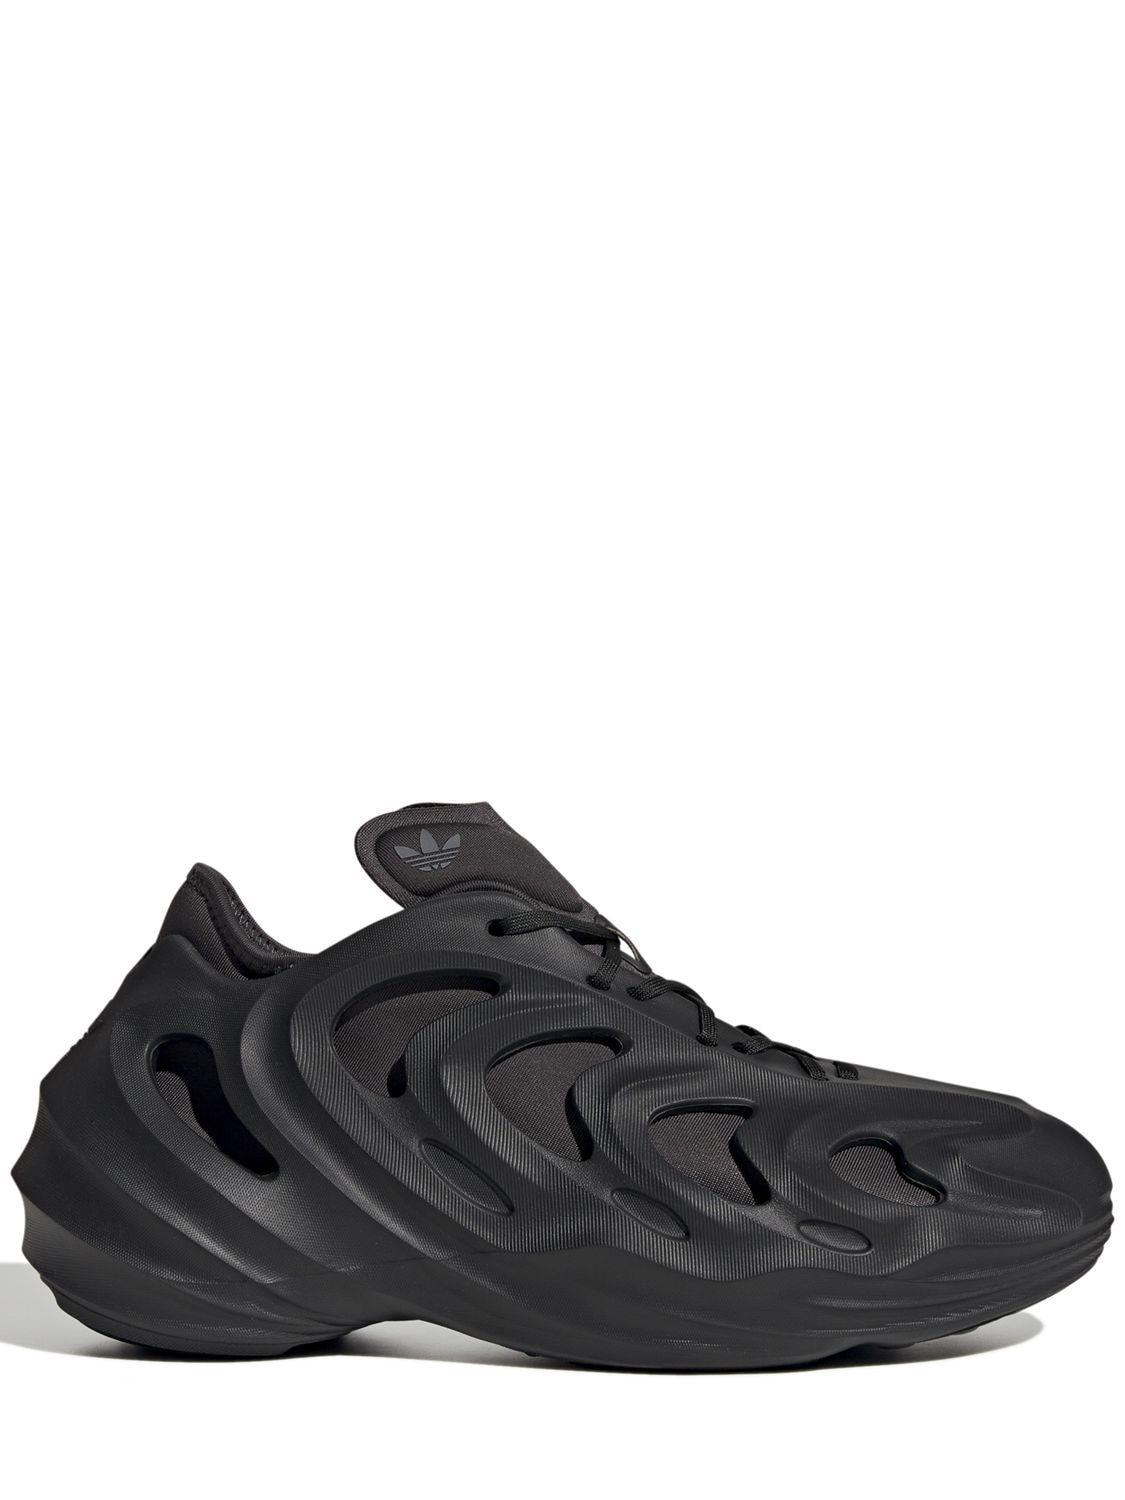 adidas Originals Adifom Q Shoes in Black | Lyst